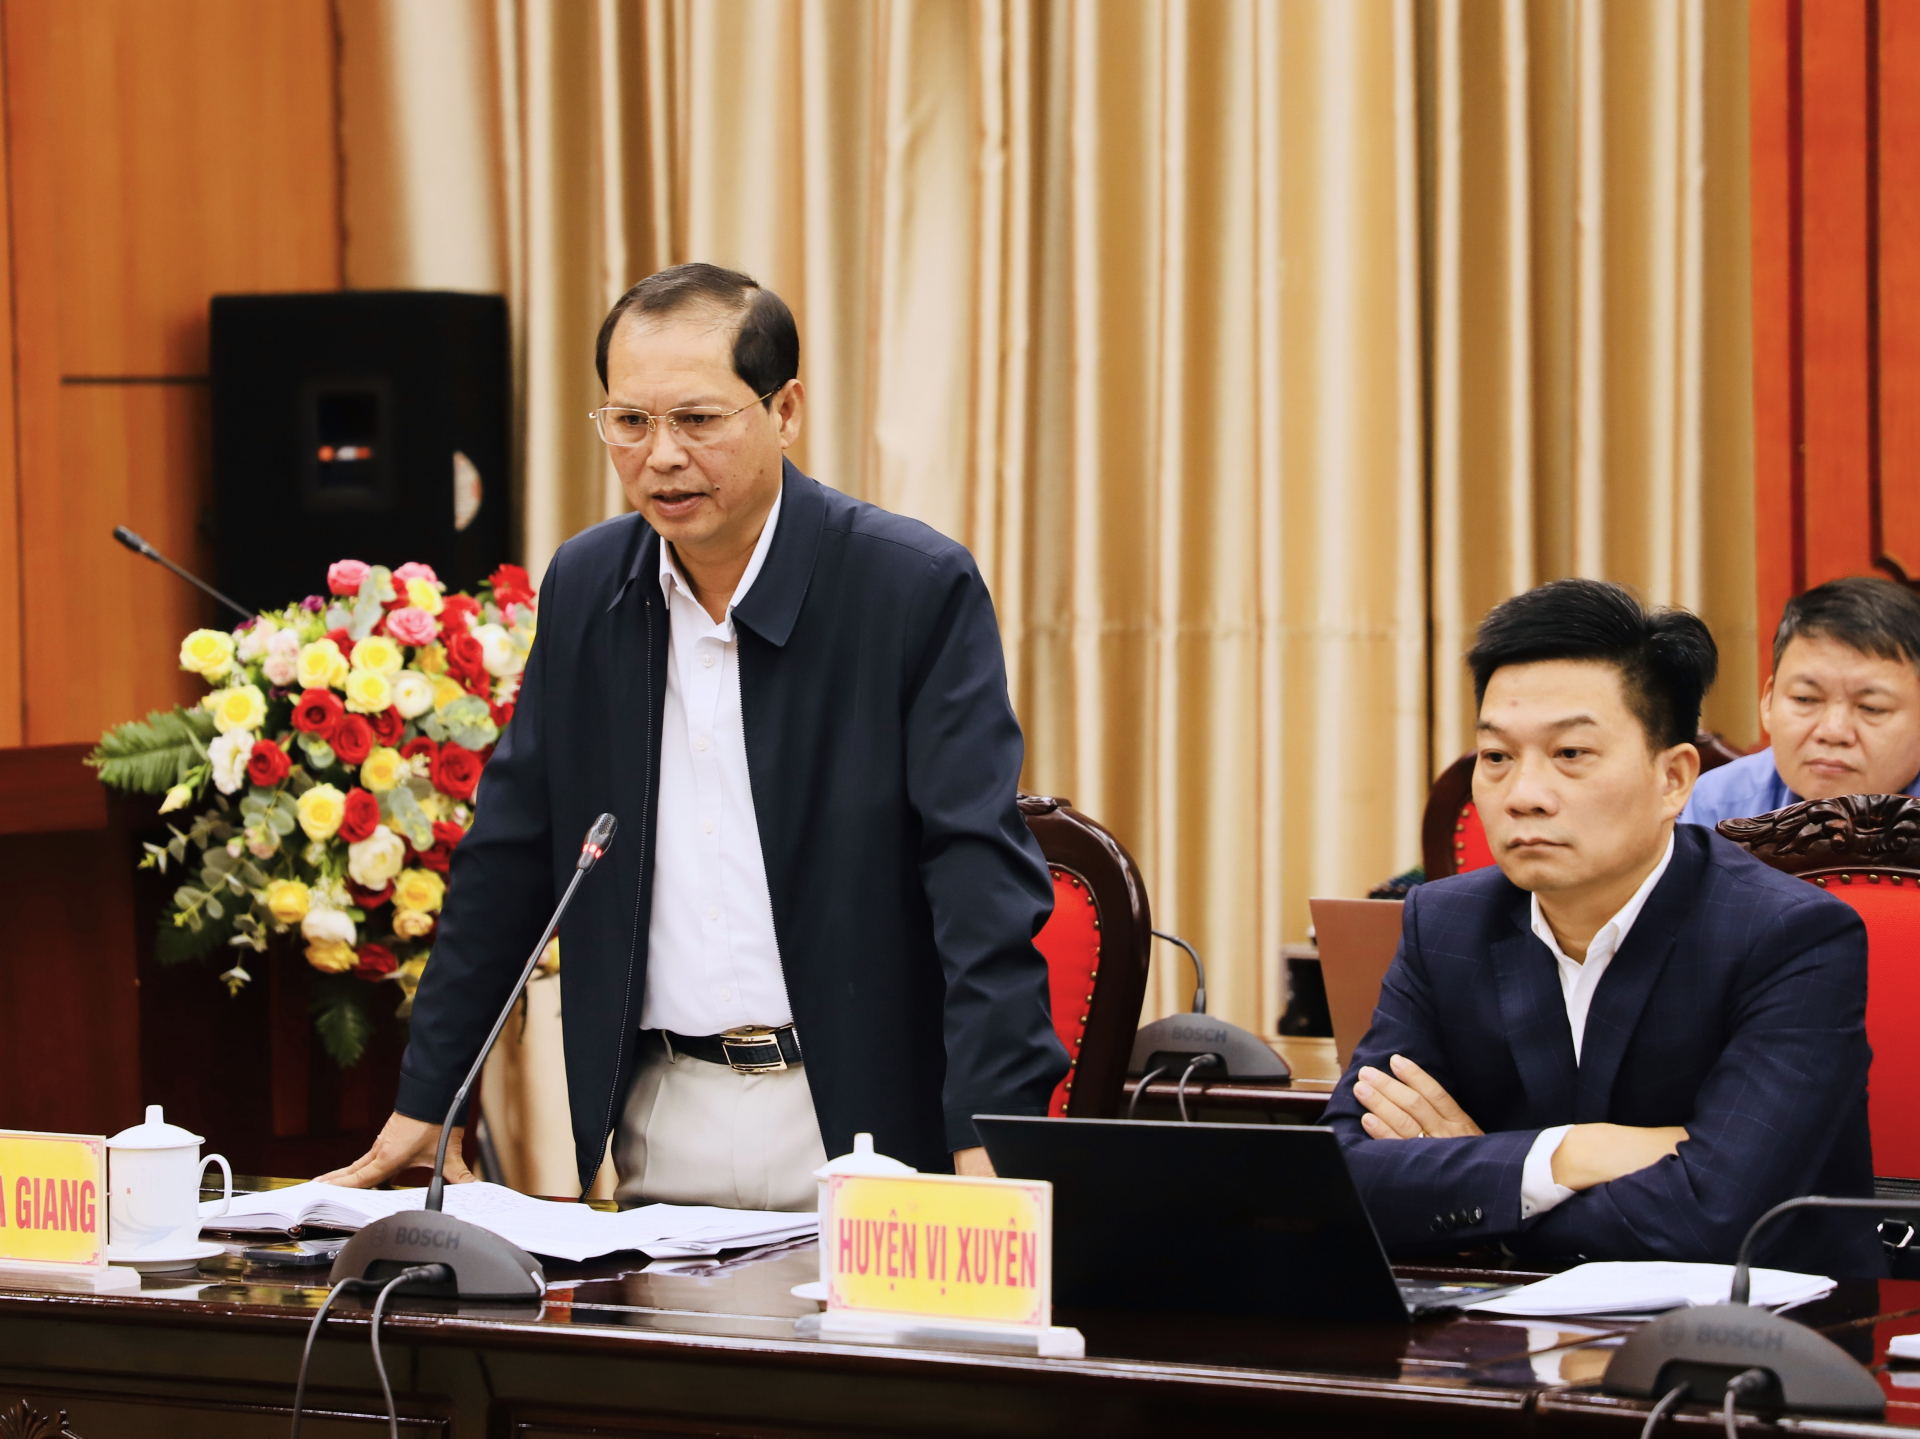 Chủ tịch UBND thành phố Hà Giang báo cáo tình hình thu ngân sách tại địa bàn